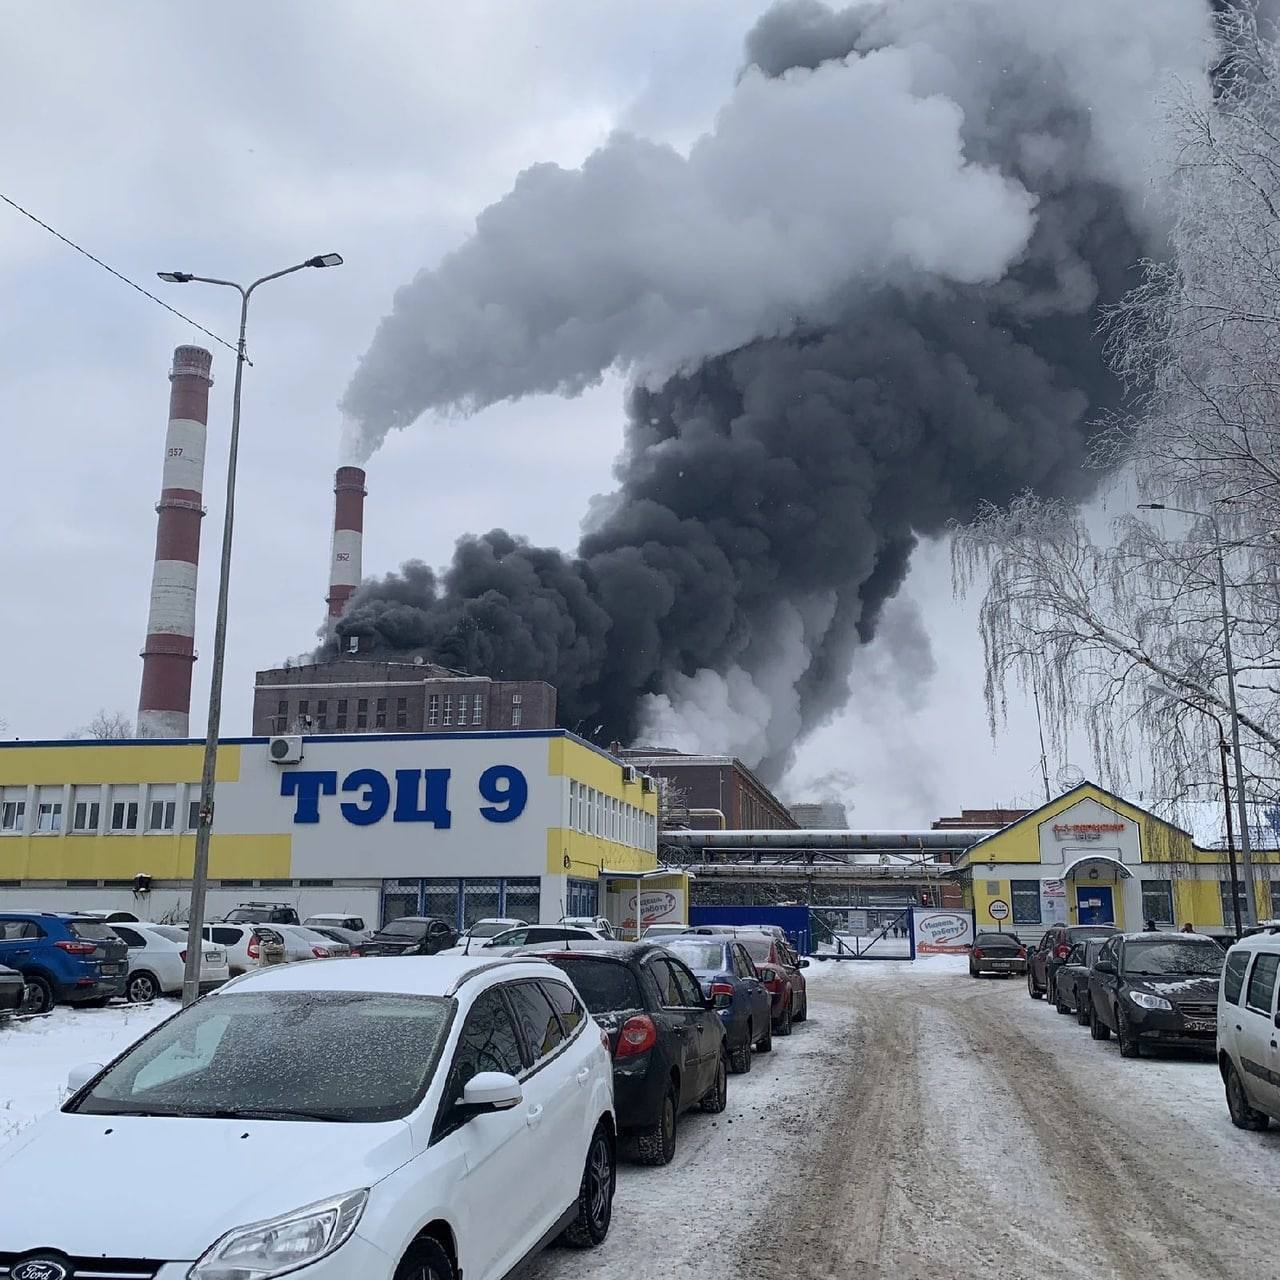 У російській Пермі спалахнула потужна пожежа, піднявся дим: кажуть, що горить ТЕЦ. Відео